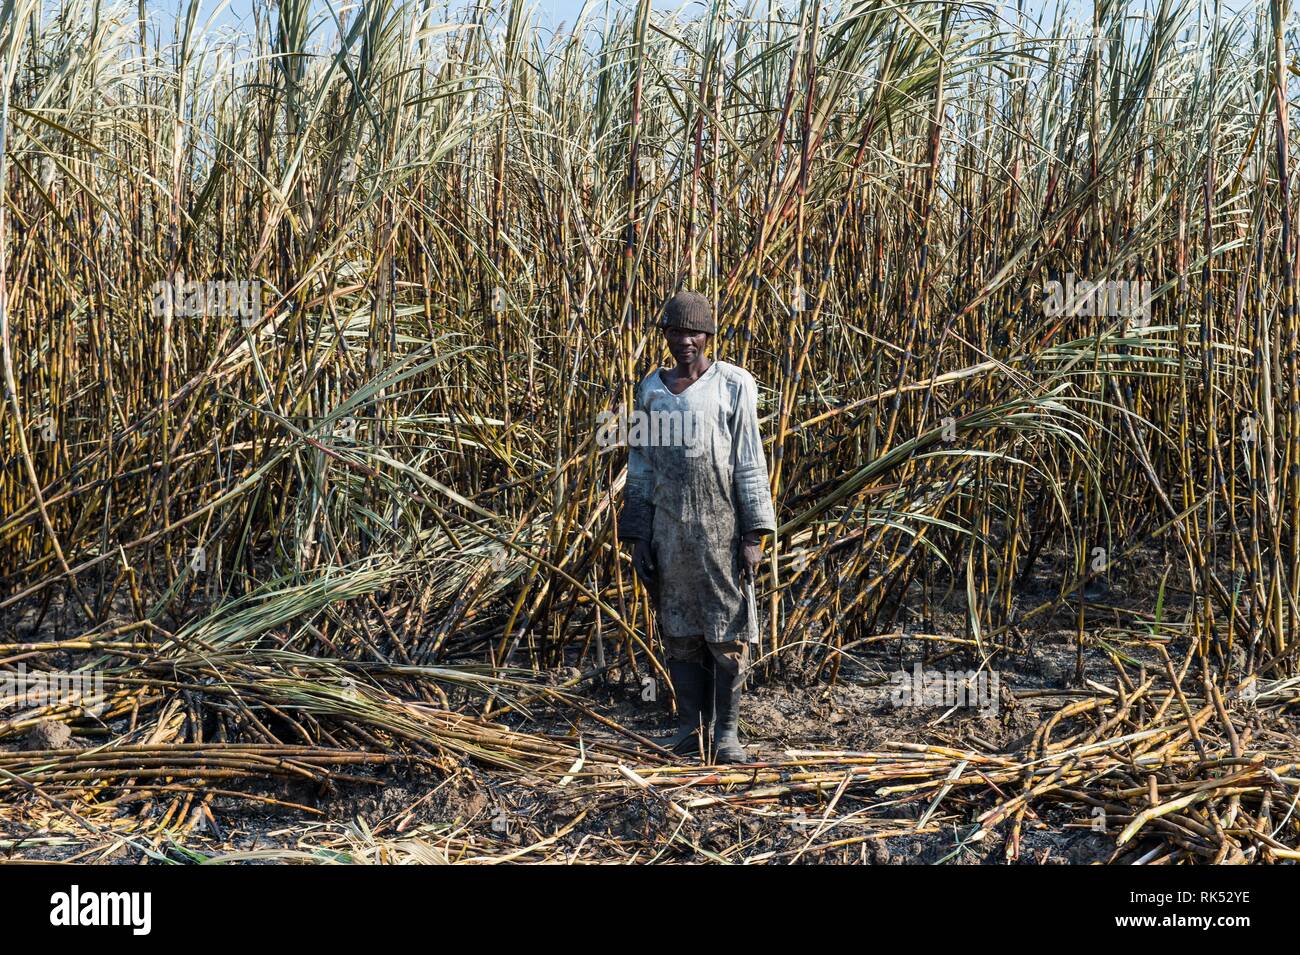 Cortador de caña de azúcar en los campos de caña de azúcar quemado, Nchalo, Malawi, Africa. Foto de stock